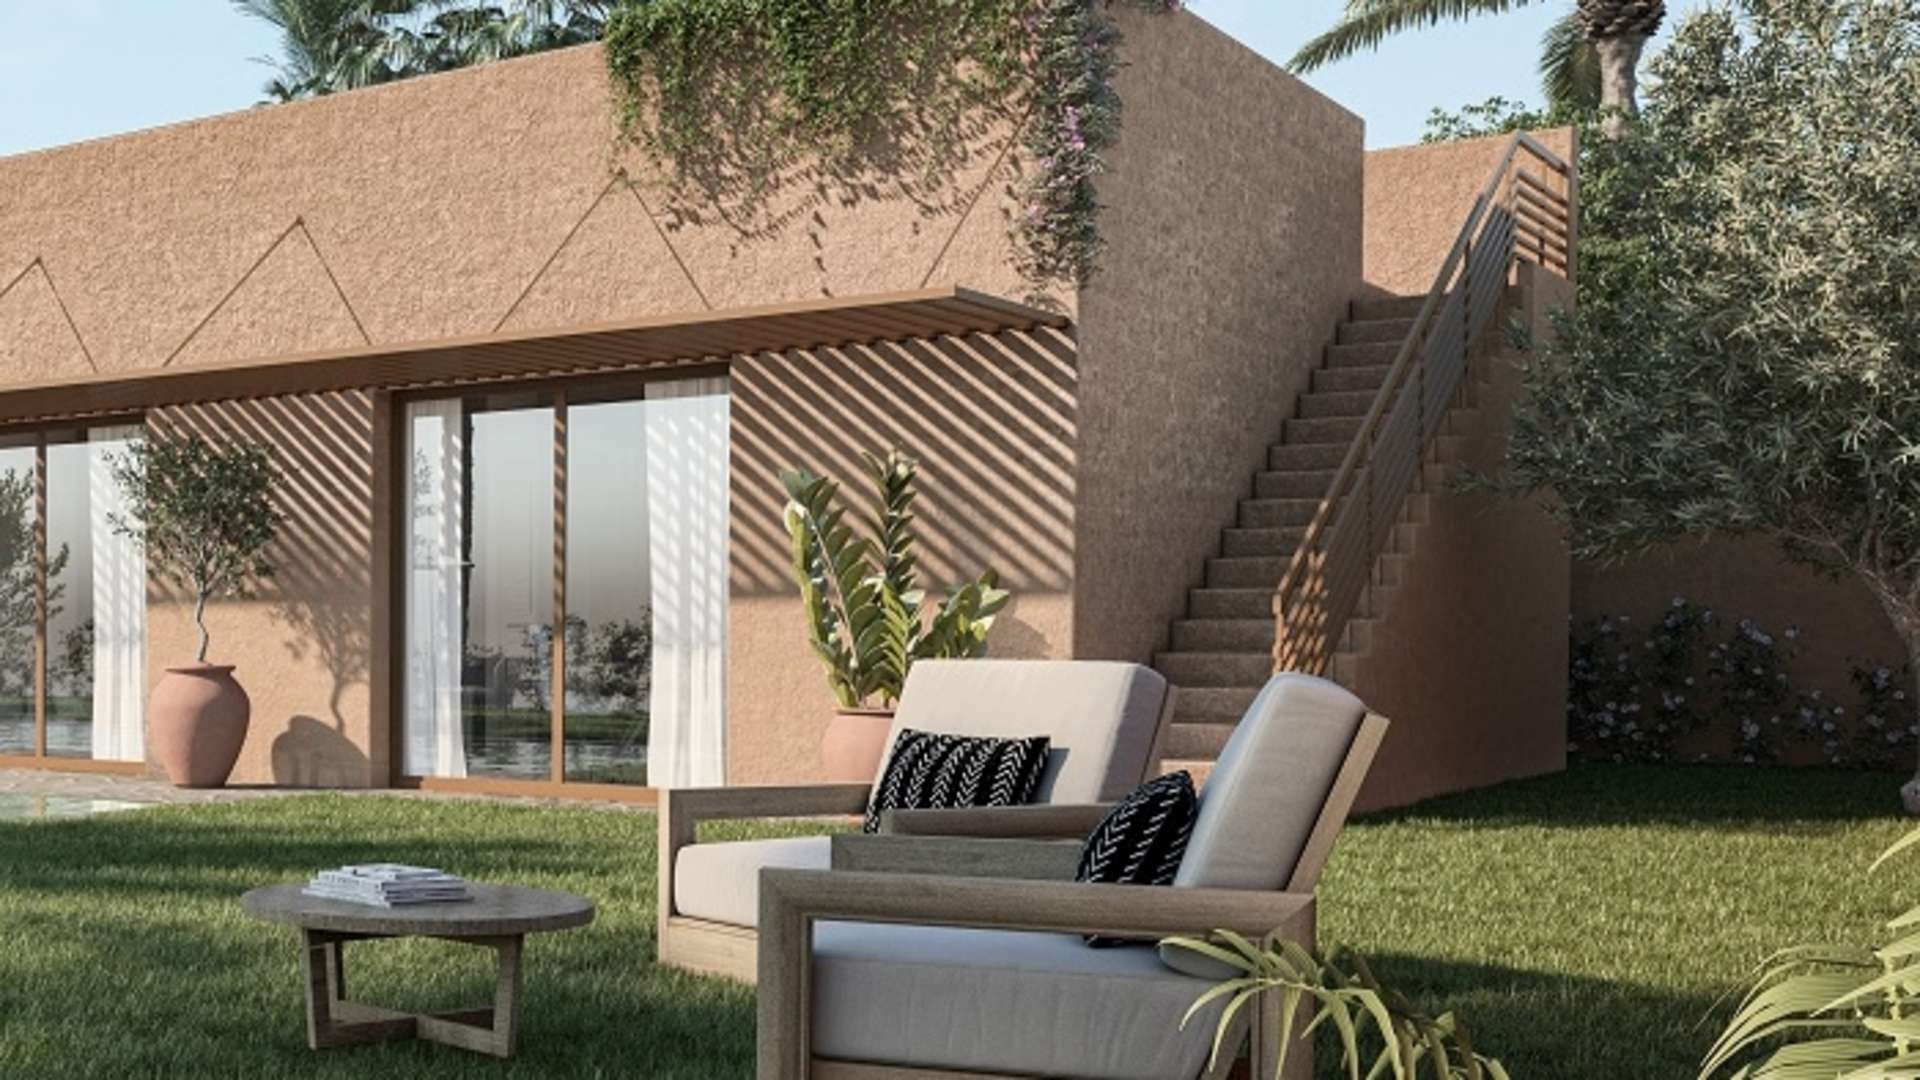 Vente,Villa,Découvrez notre nouveau projet immobilier exclusif : Villas de Plain-Pied sur la route de l'Ourika,Marrakech,Route de l'Ourika